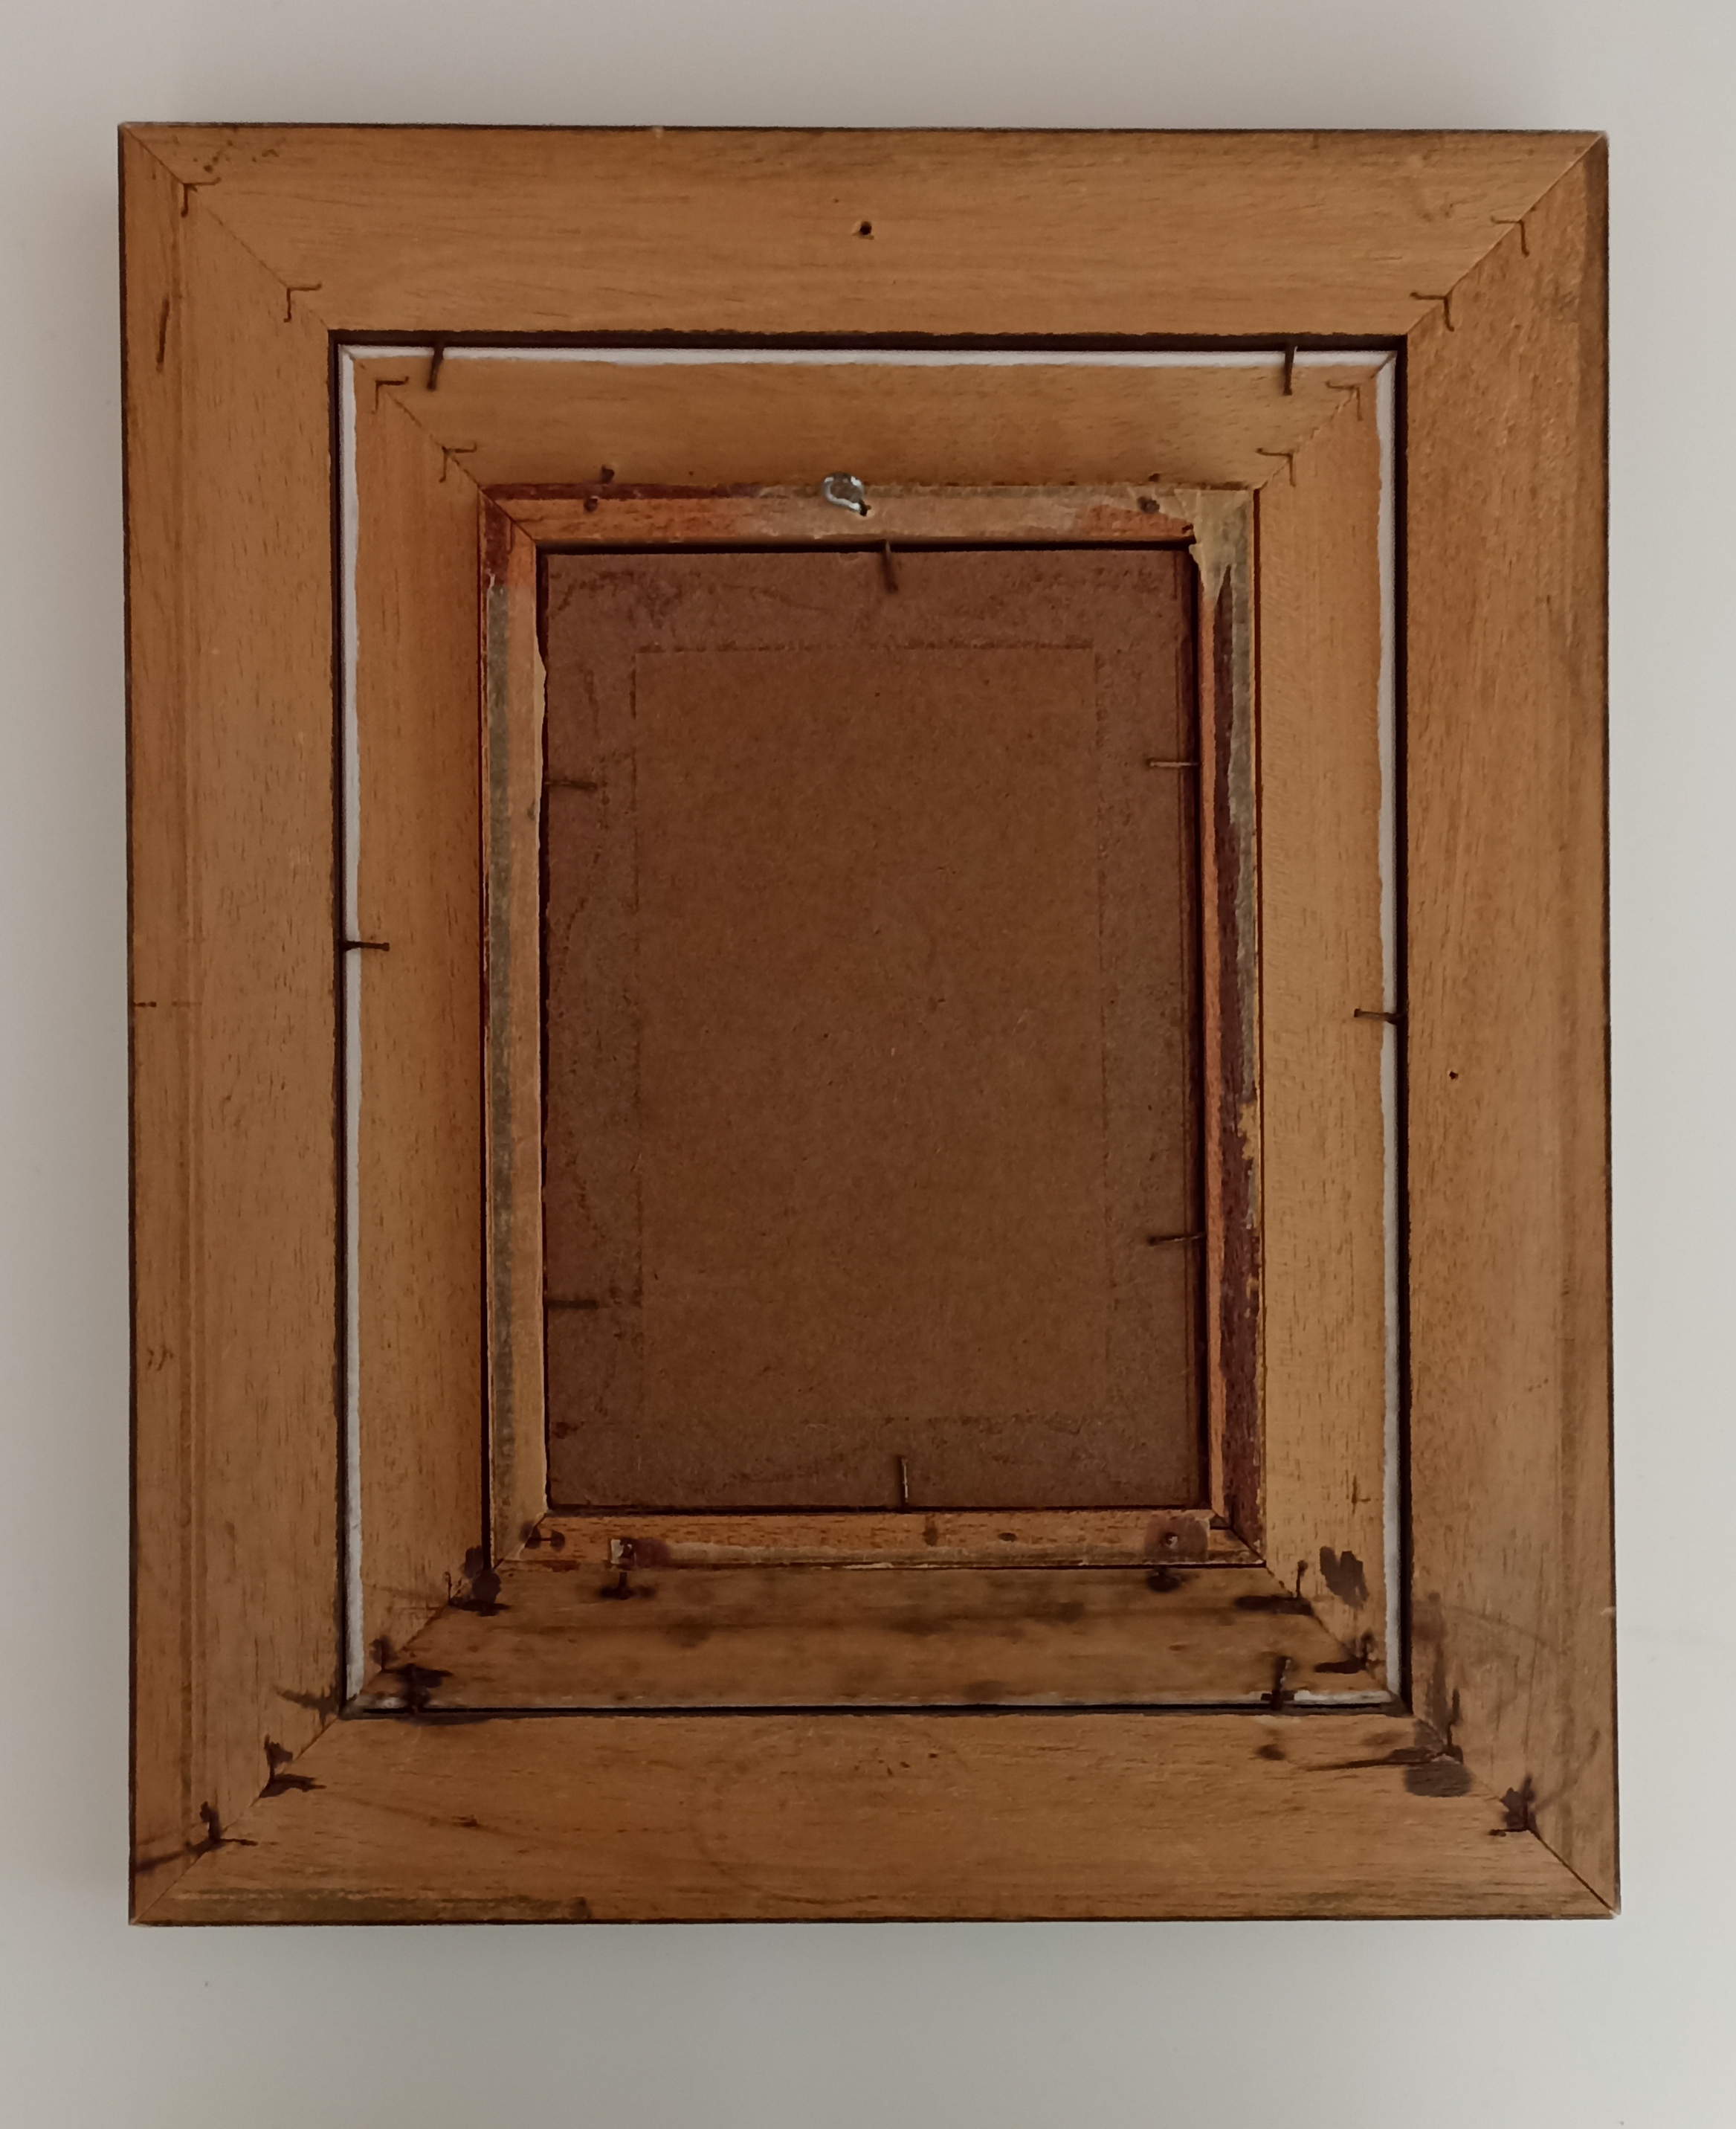 Bonito cuadro con marco de madera y cristal protector. 35,5x29,5 cm.